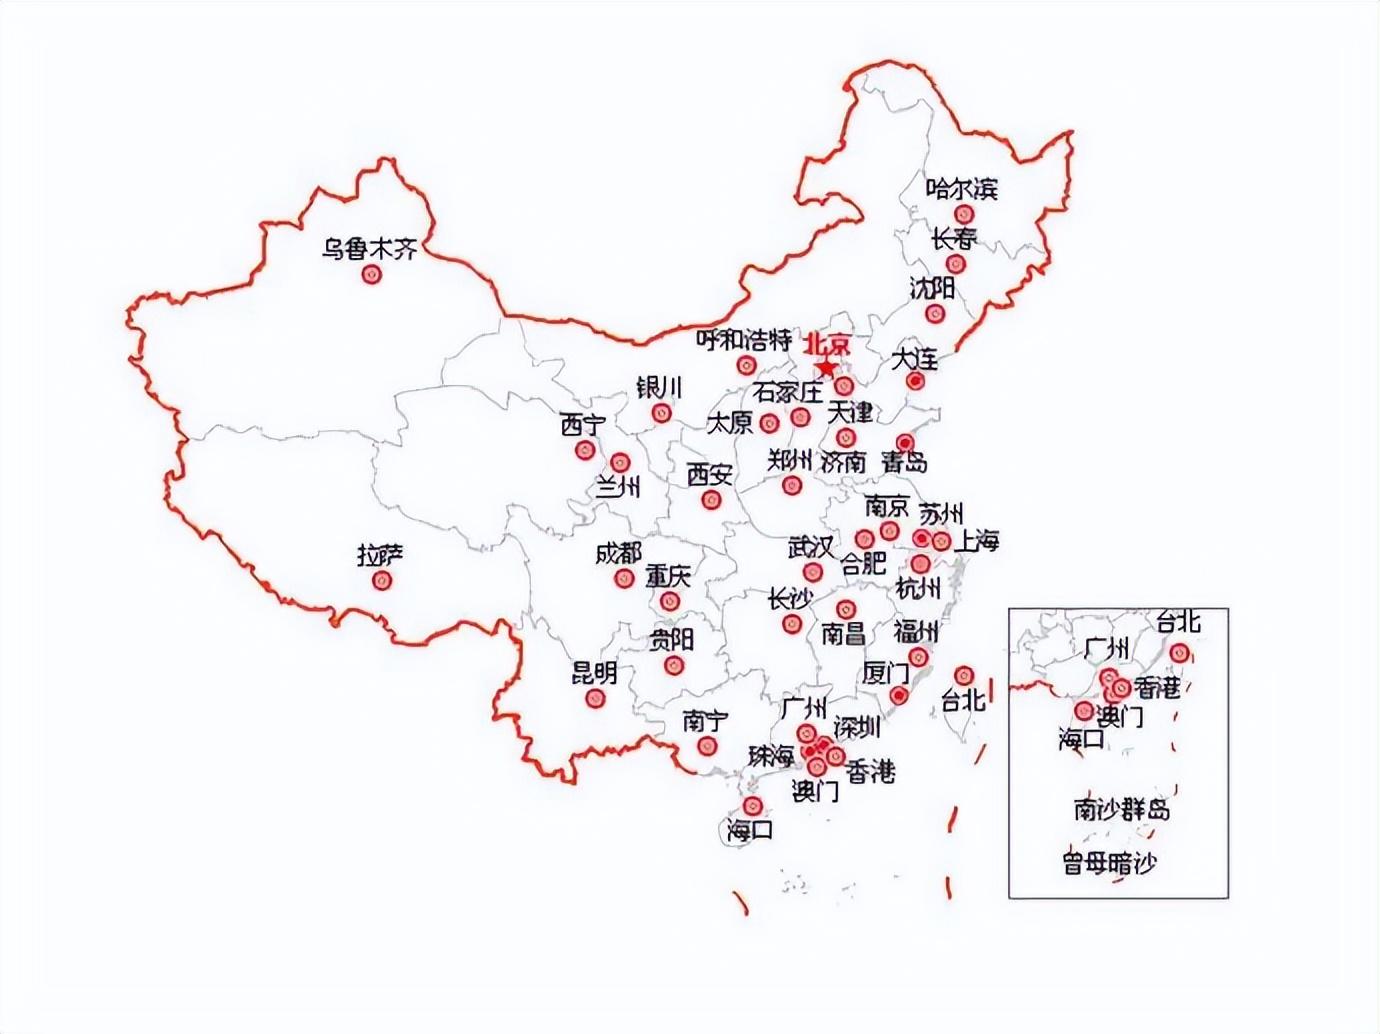 中国27个省会规模对比:沈阳超郑州,南宁,合肥和福州仅为大城市